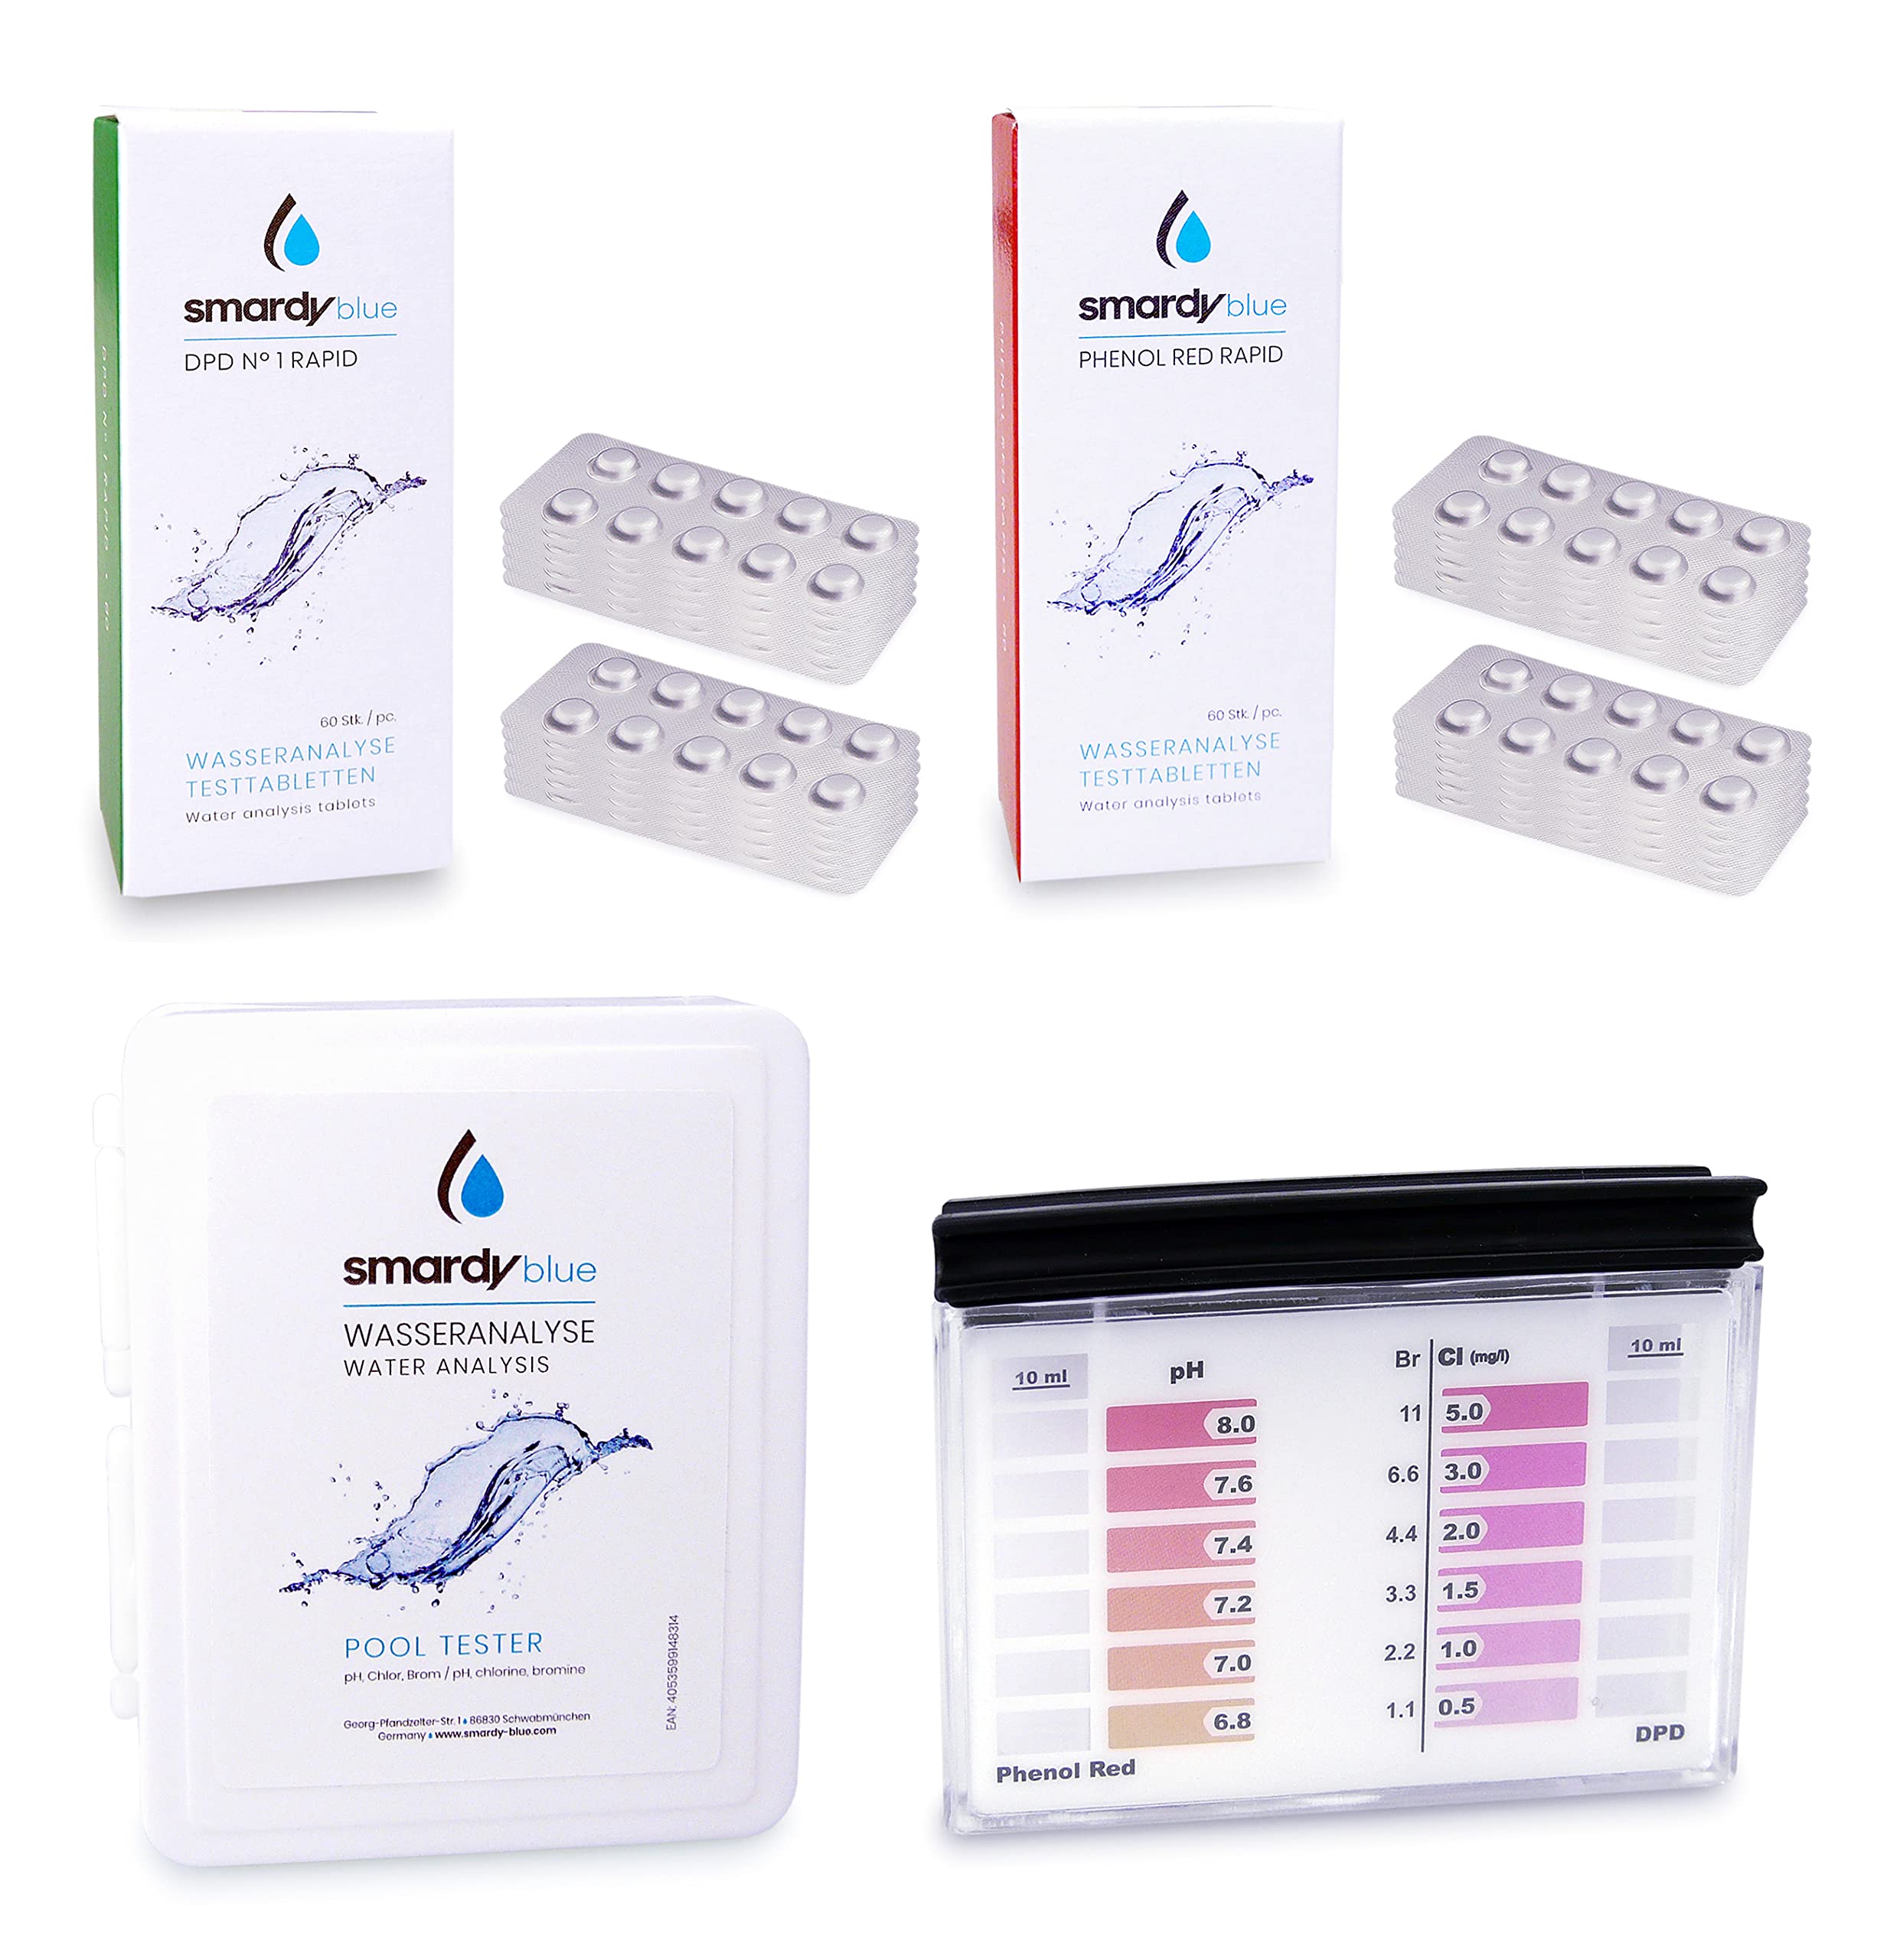 SMARDY Pooltester Testkit - 240 Testtabletten Rapid für pH-Wert/Freies Chlor/Brom, Reagenzbehälter, Aufbewahrungsbox